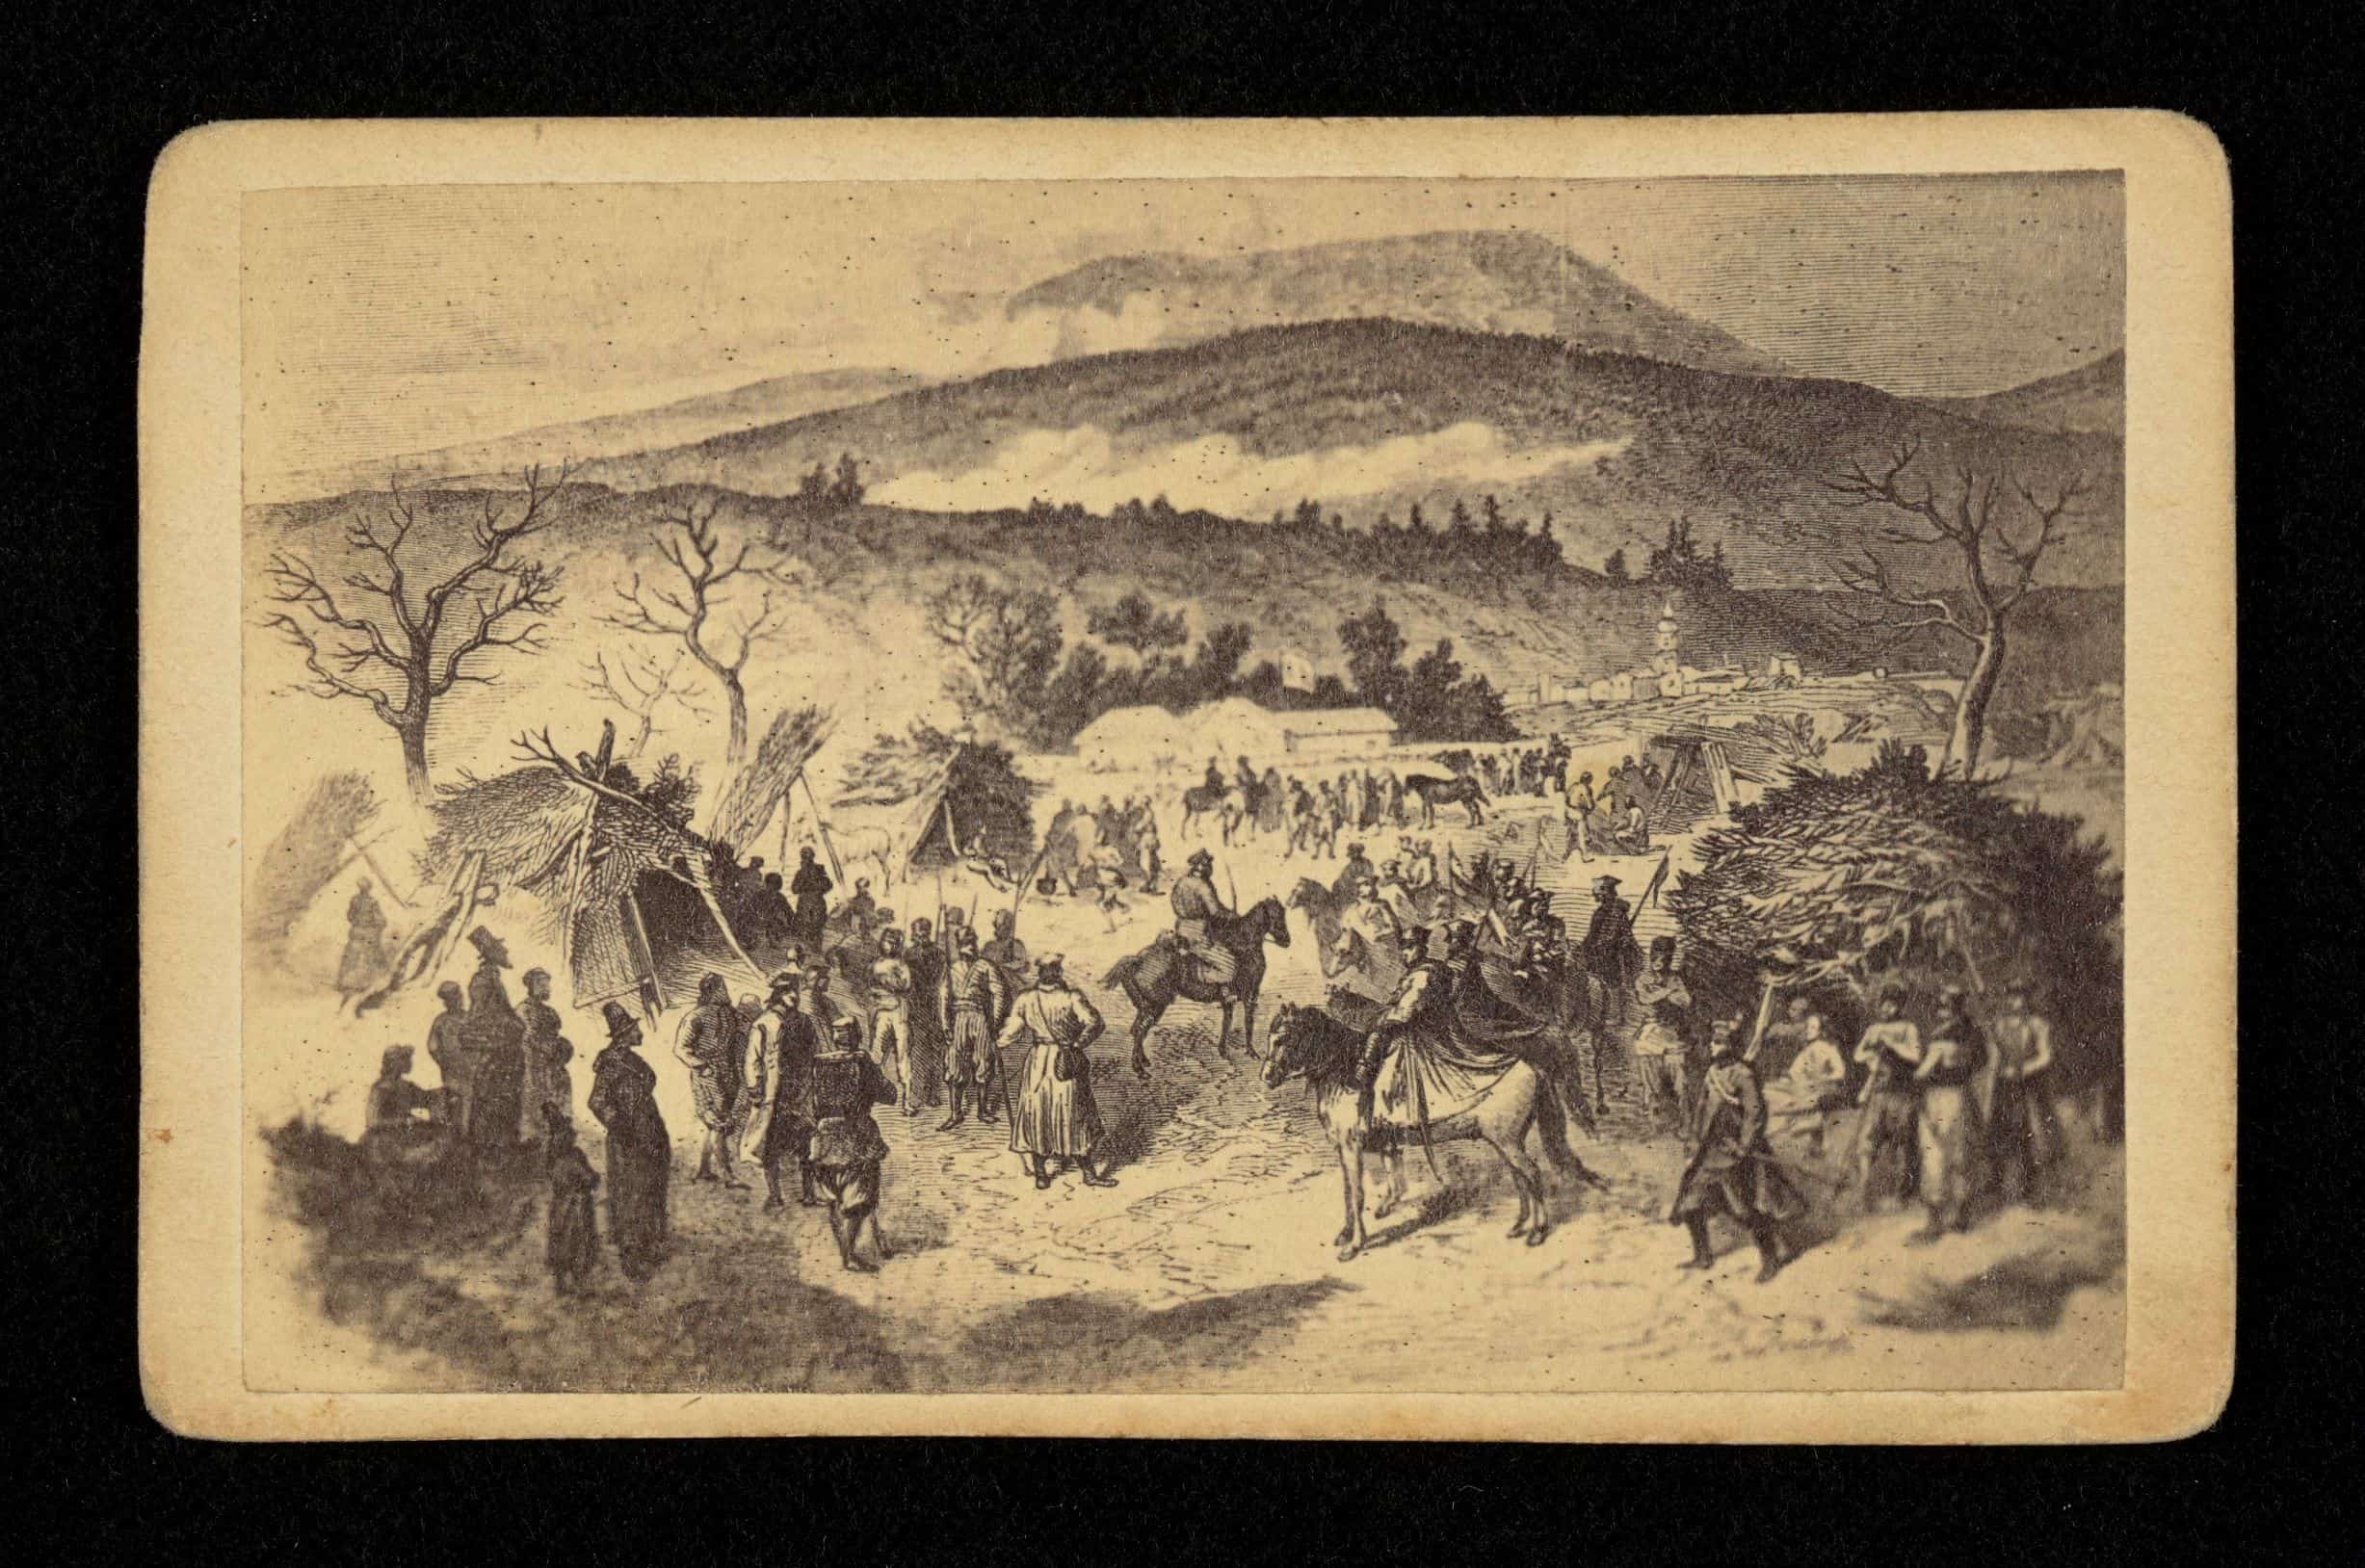 Obóz Langiewicza w Górach Świętokrzyskich (luty 1863). Rys. J. Worms. Źródło: Polona